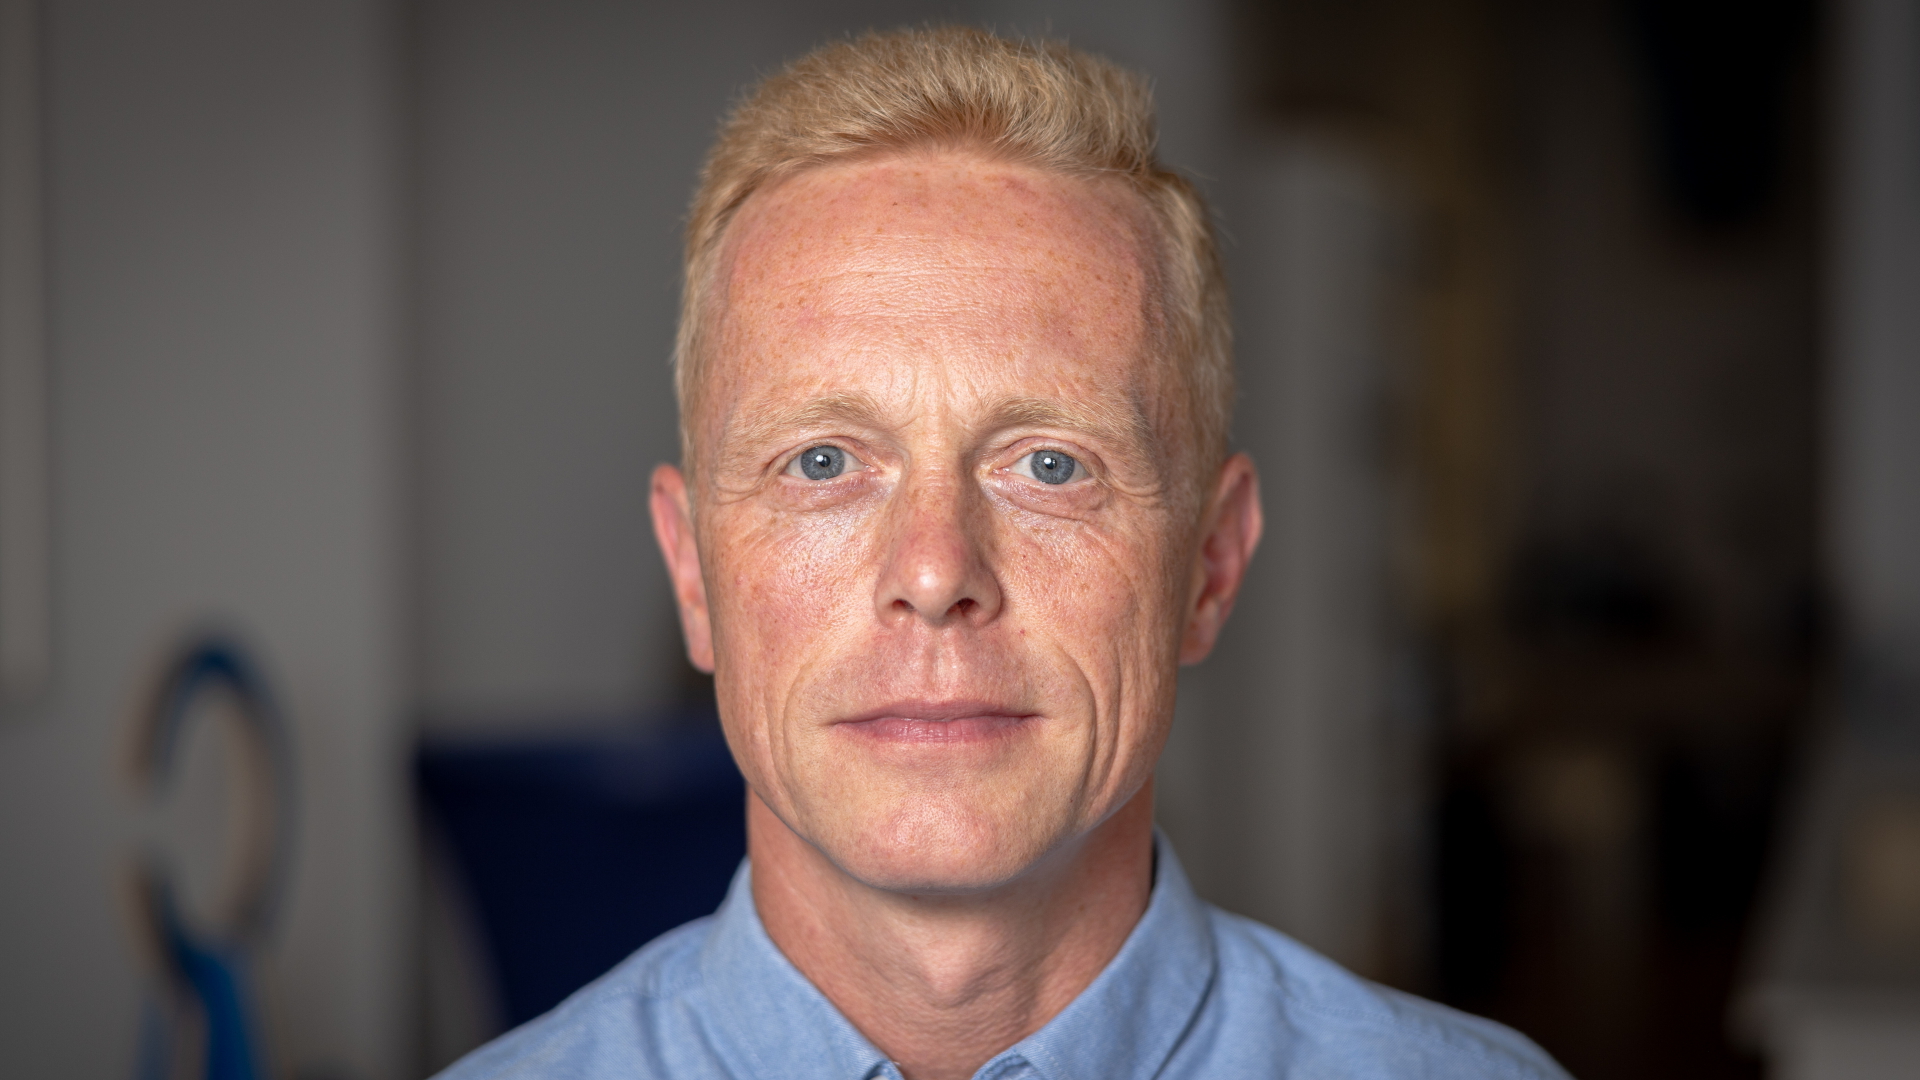 Lars Schieske ist AfD-Kandidat für die Wahl zum Cottbuser Oberbürgermeister. | dpa